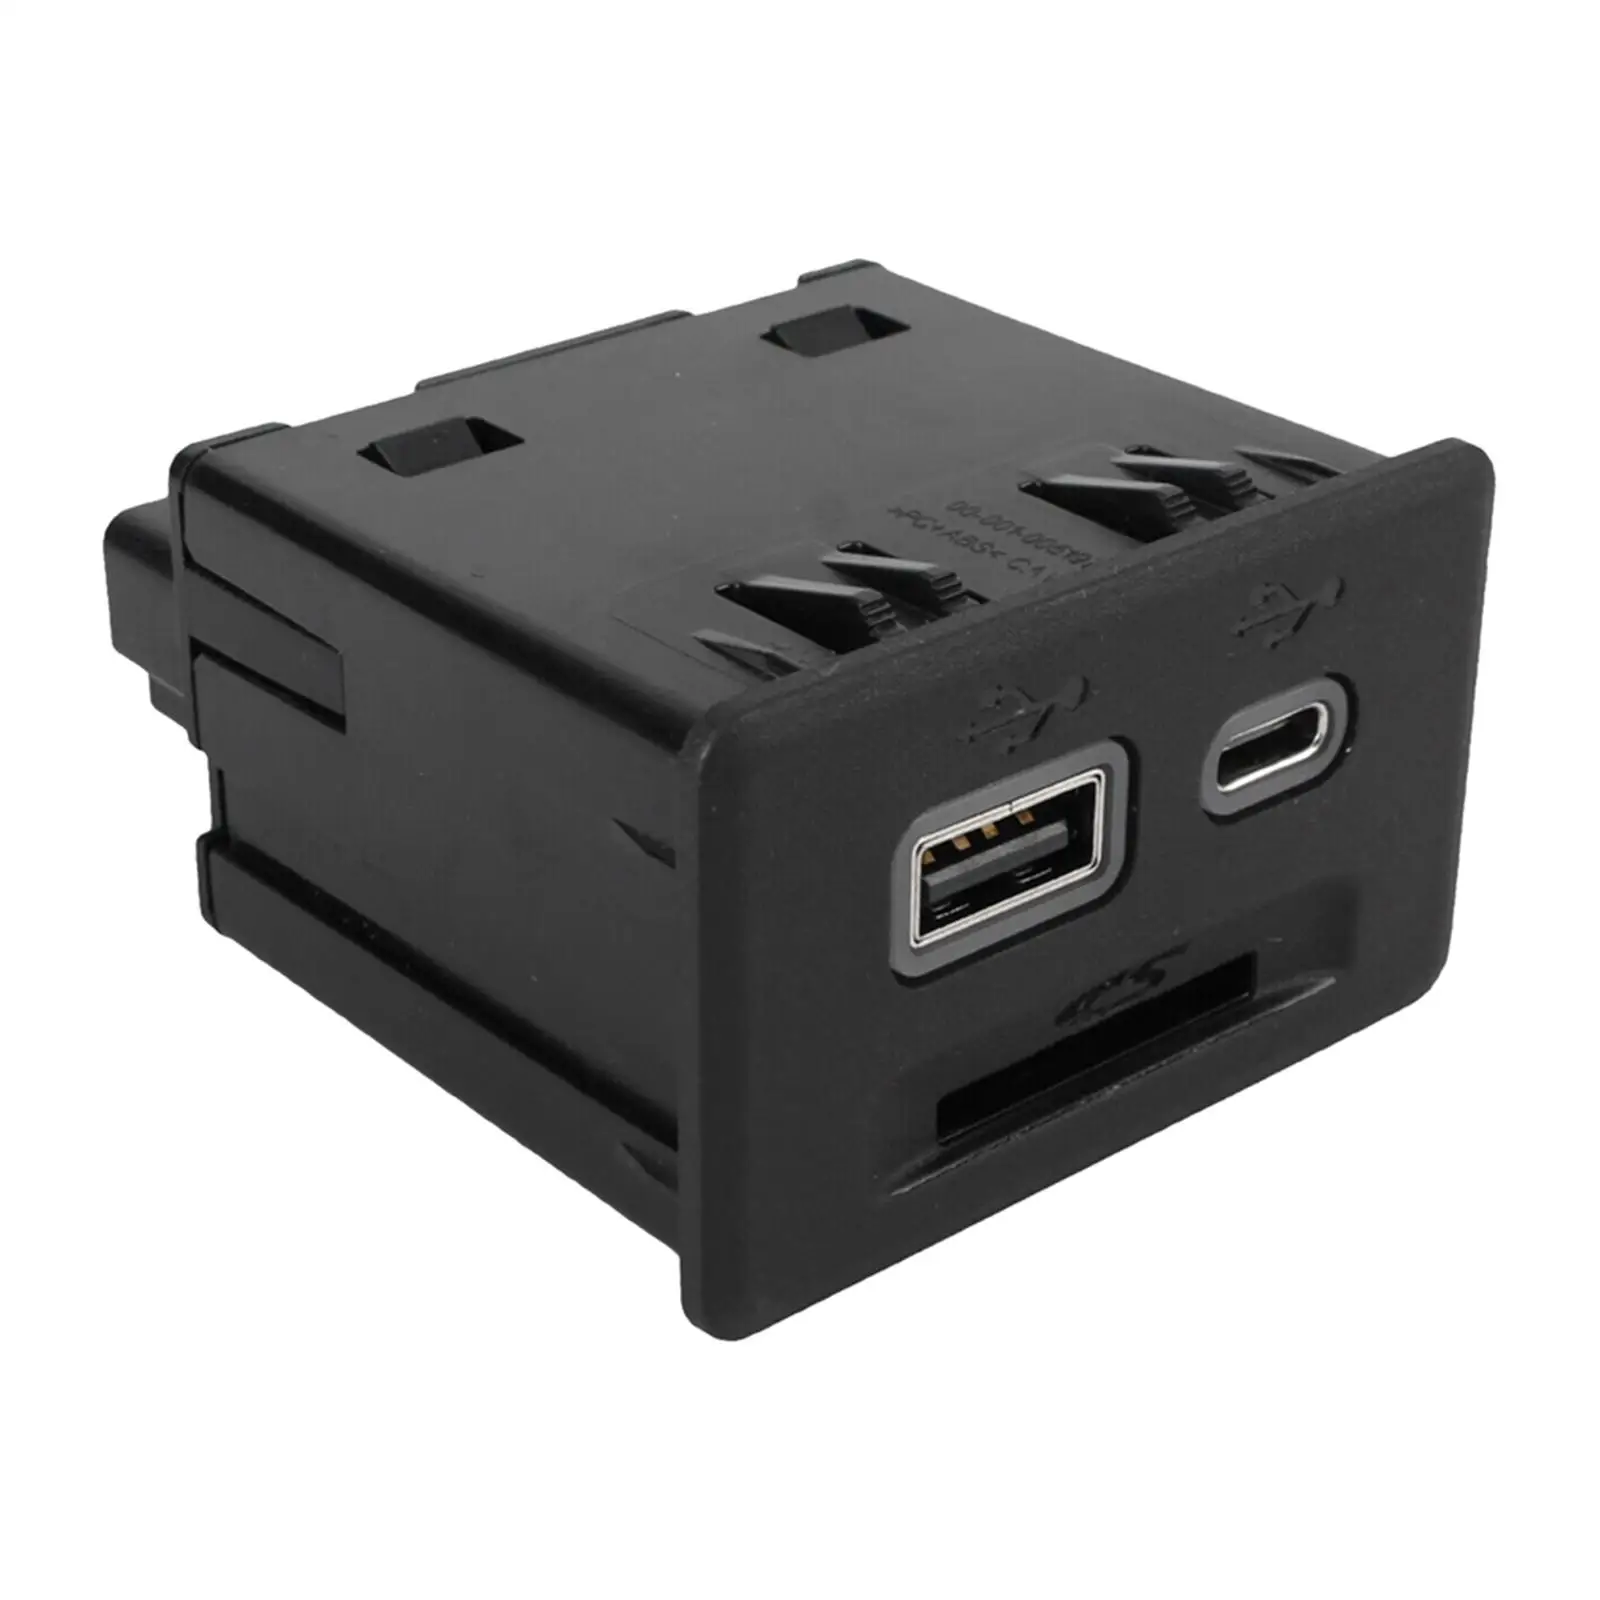 

Подлокотник с USB-портом 13525431, профессиональный простой в установке автомобильный разъем для SD-карты, запасные части для GMC выбраa Sierra 1500